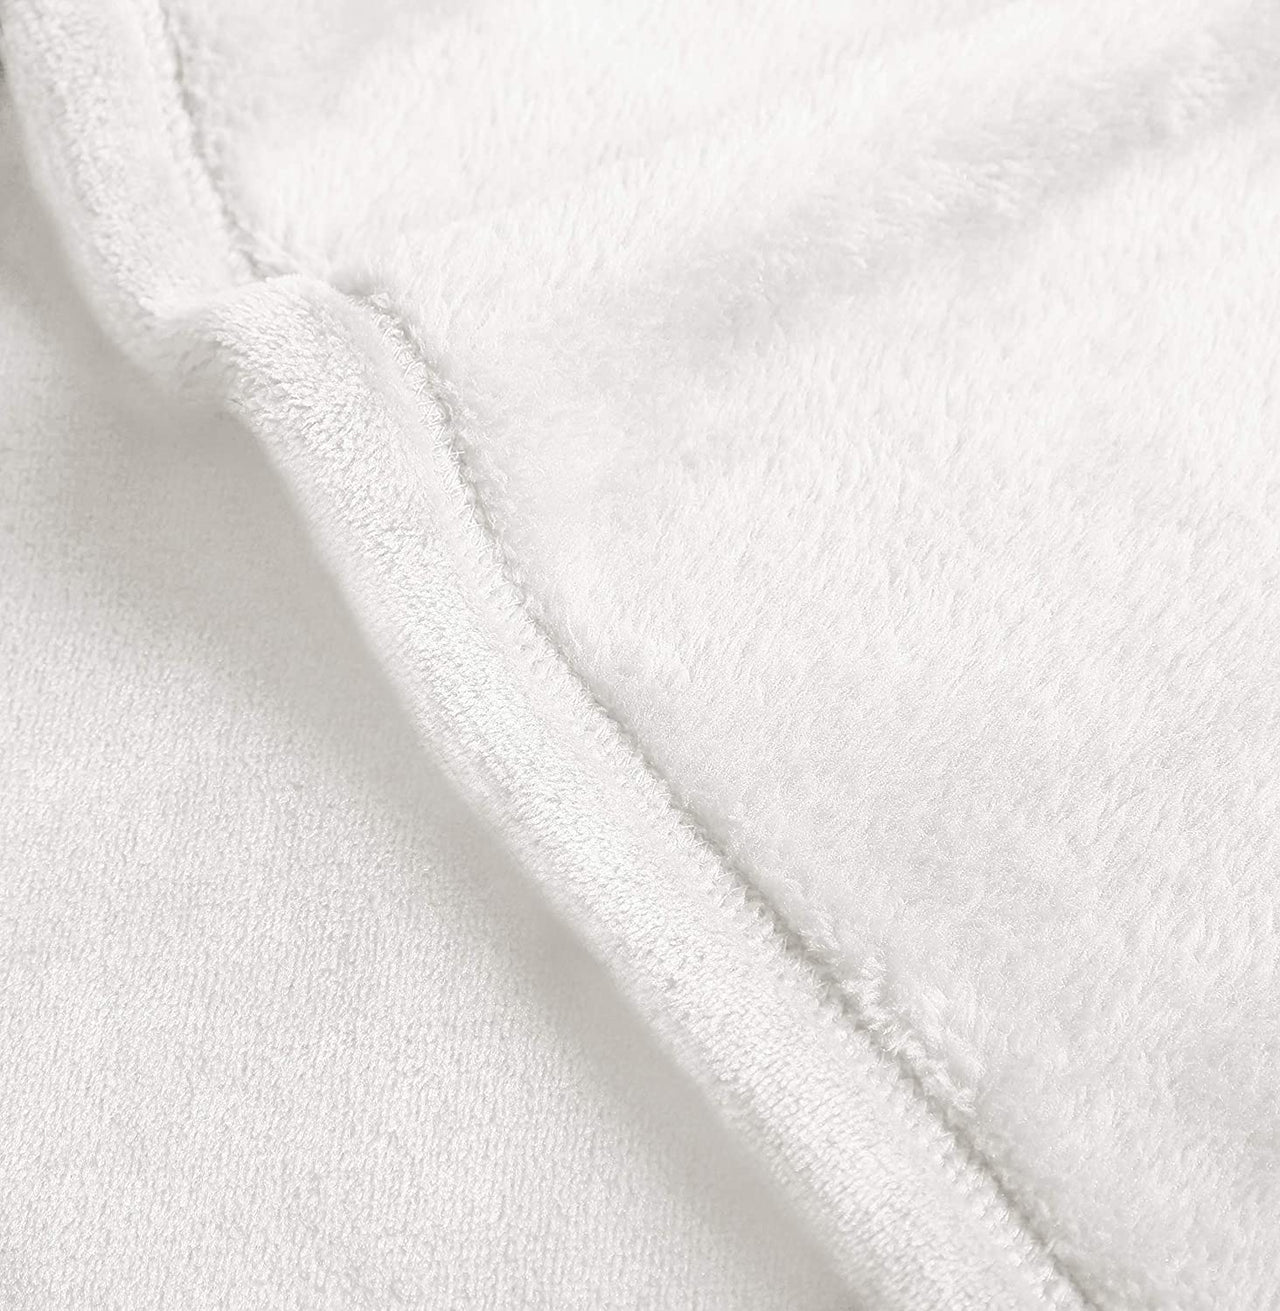 Custom Dog Blanket - Personalized World's Best Vizsla Dad Gift For Dad - Fleece Blanket